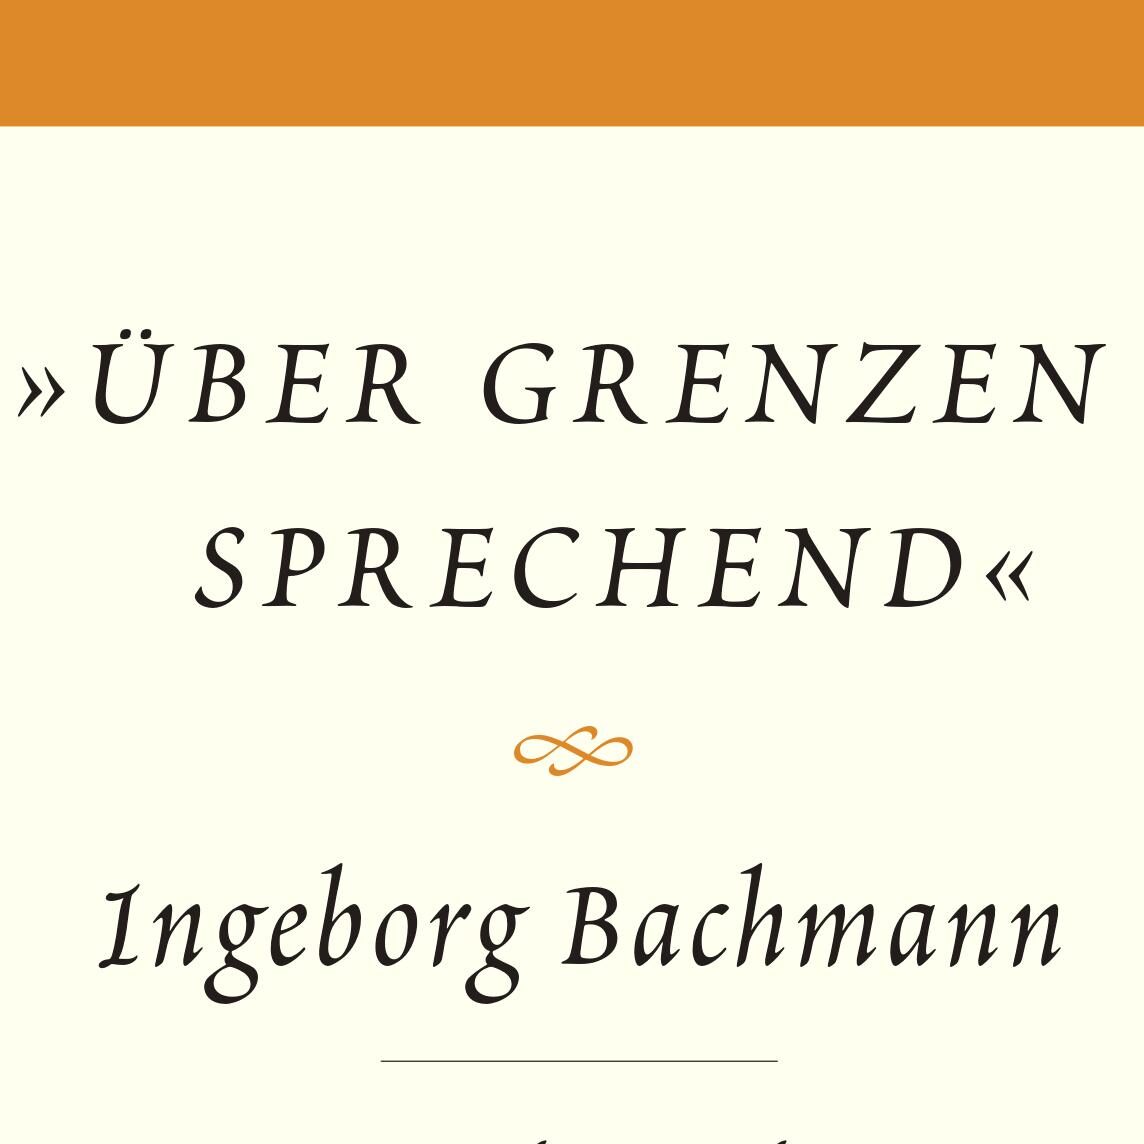 Bachmann Briefwechsel KaschnitzDominSachs_cover